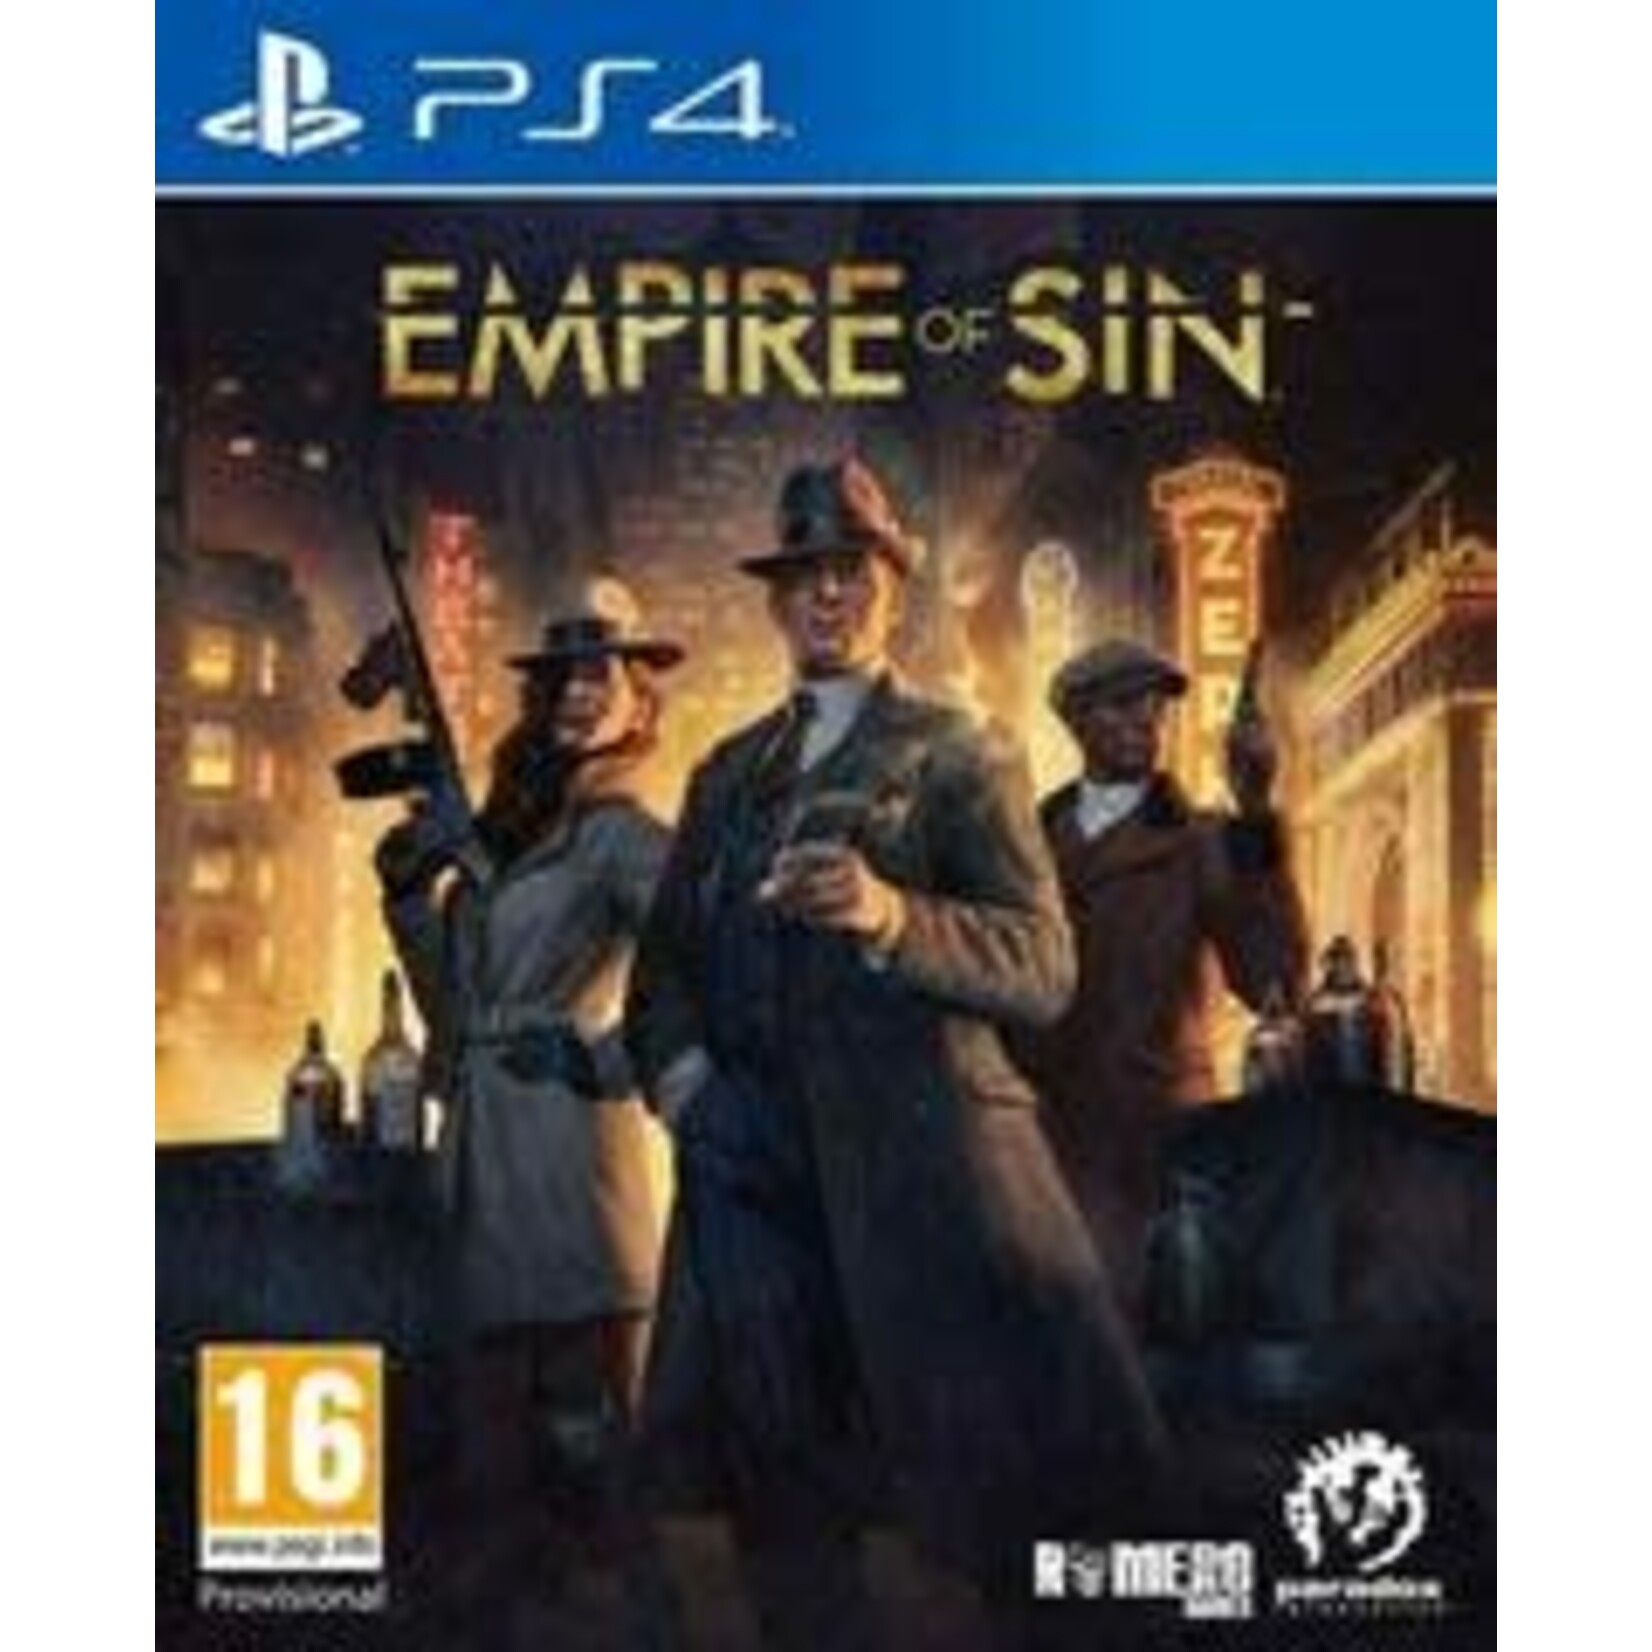 PS4U-Empire of the Sun